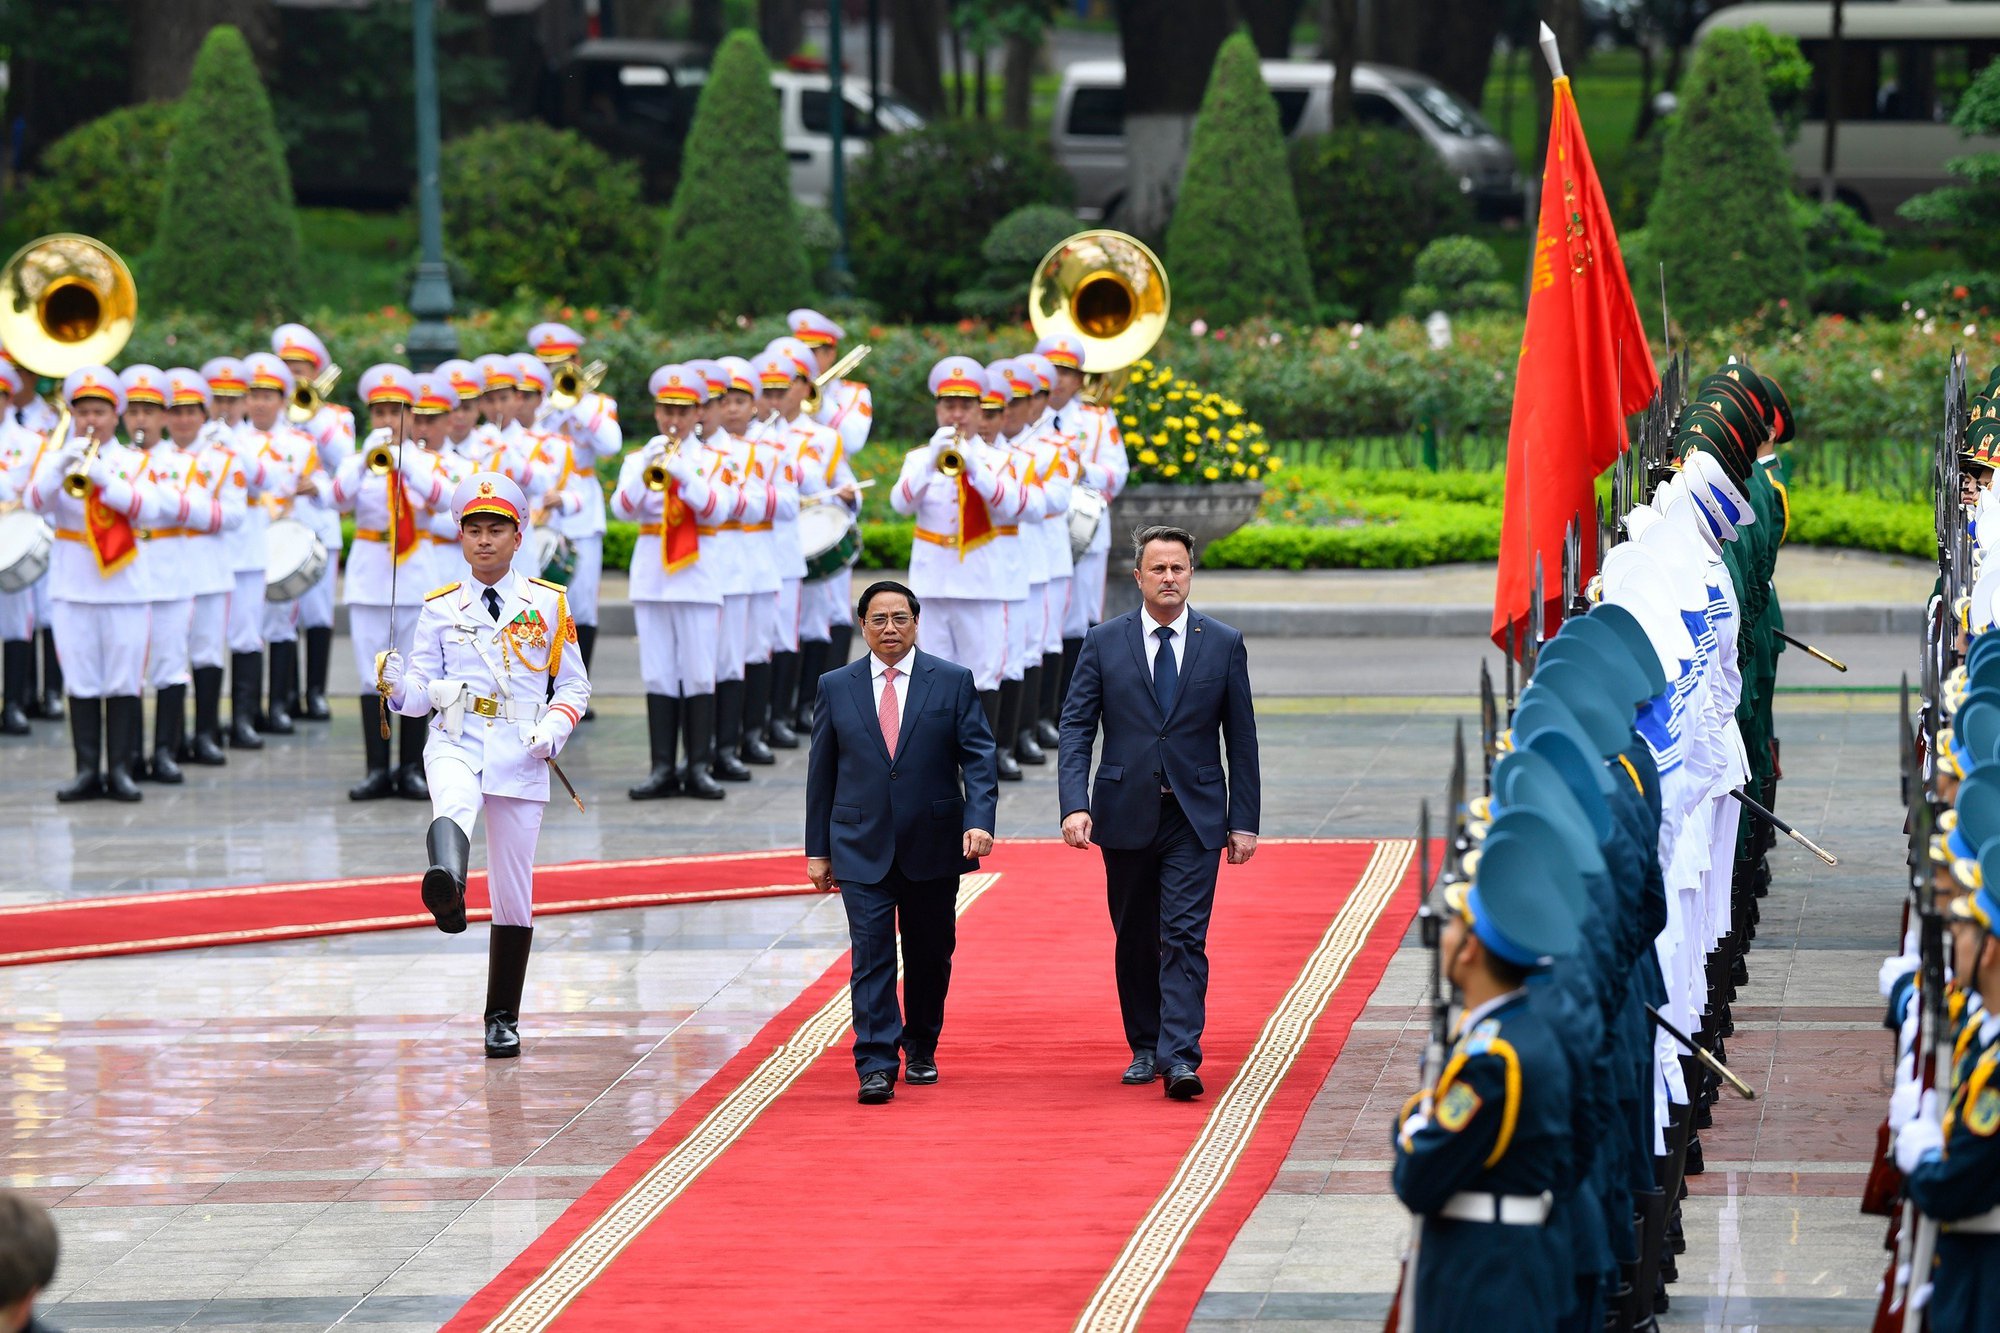 Chùm ảnh: Thủ tướng Phạm Minh Chính đón, hội đàm với Thủ tướng Luxembourg